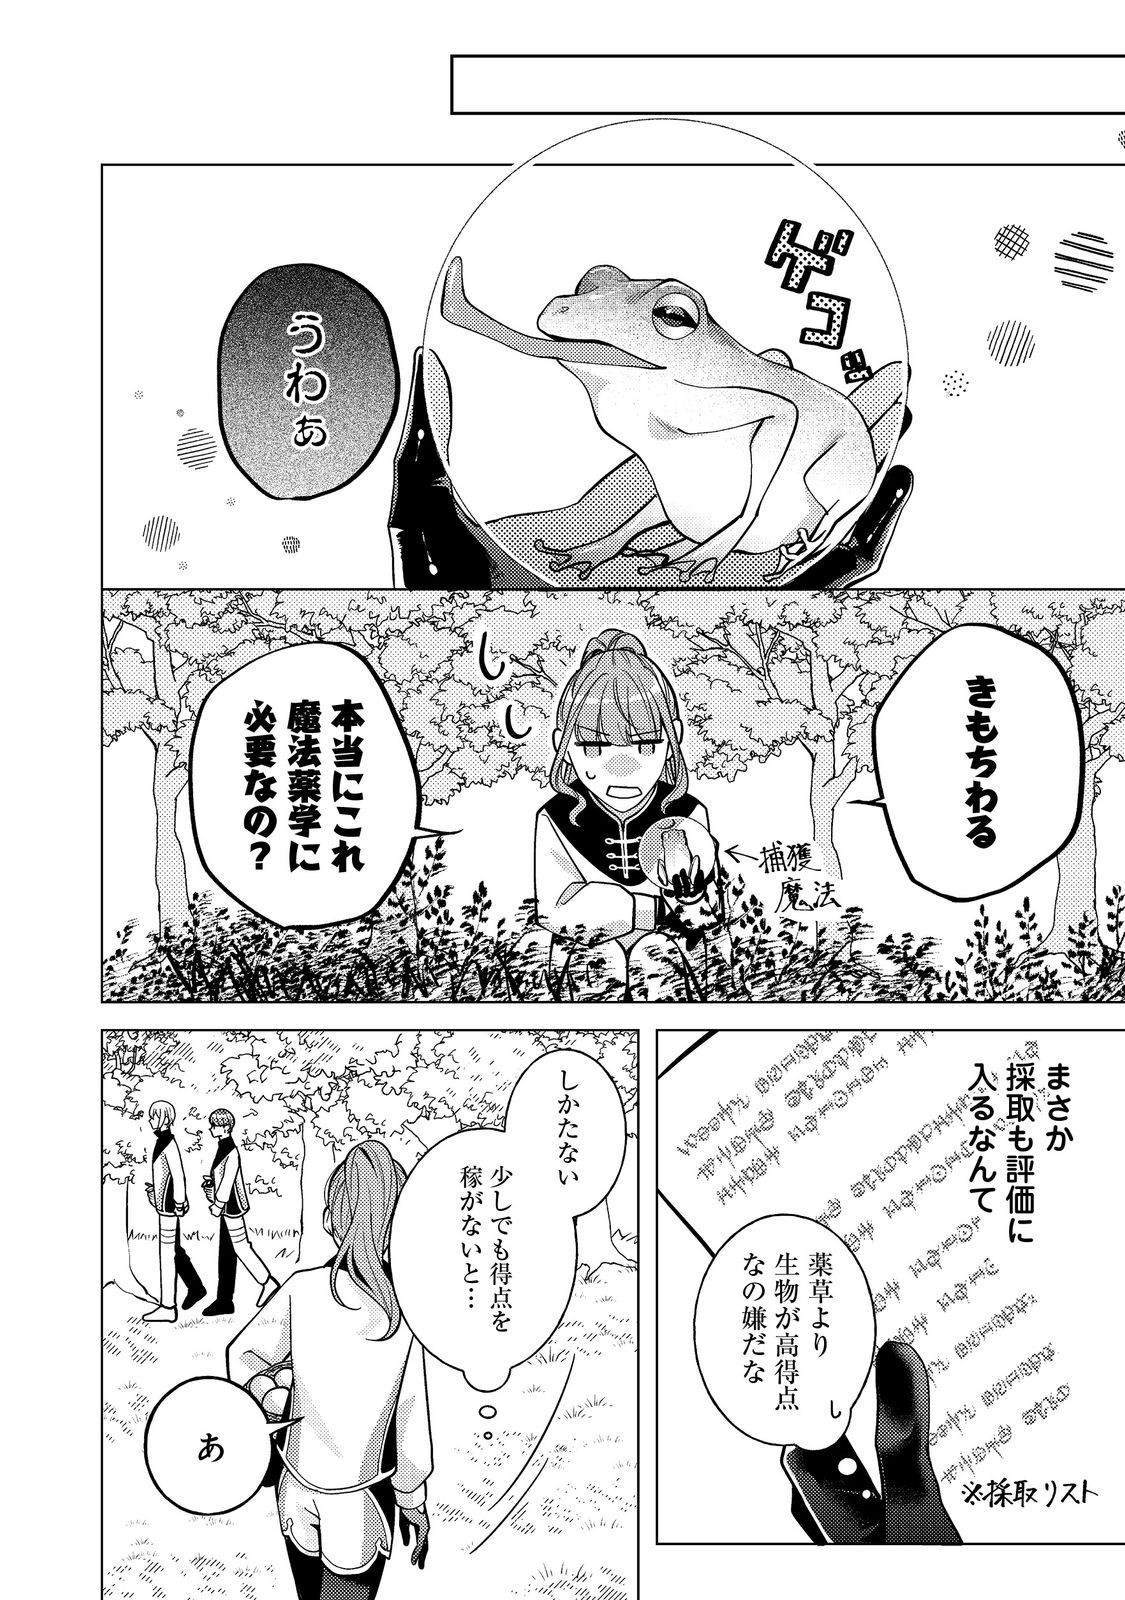 Bad End Mokuzen no Heroine ni Tensei shita Watashi, Konse de wa Renai suru Tsumori ga Cheat na Ani ga Hanashite kuremasen!? - Chapter 18 - Page 2